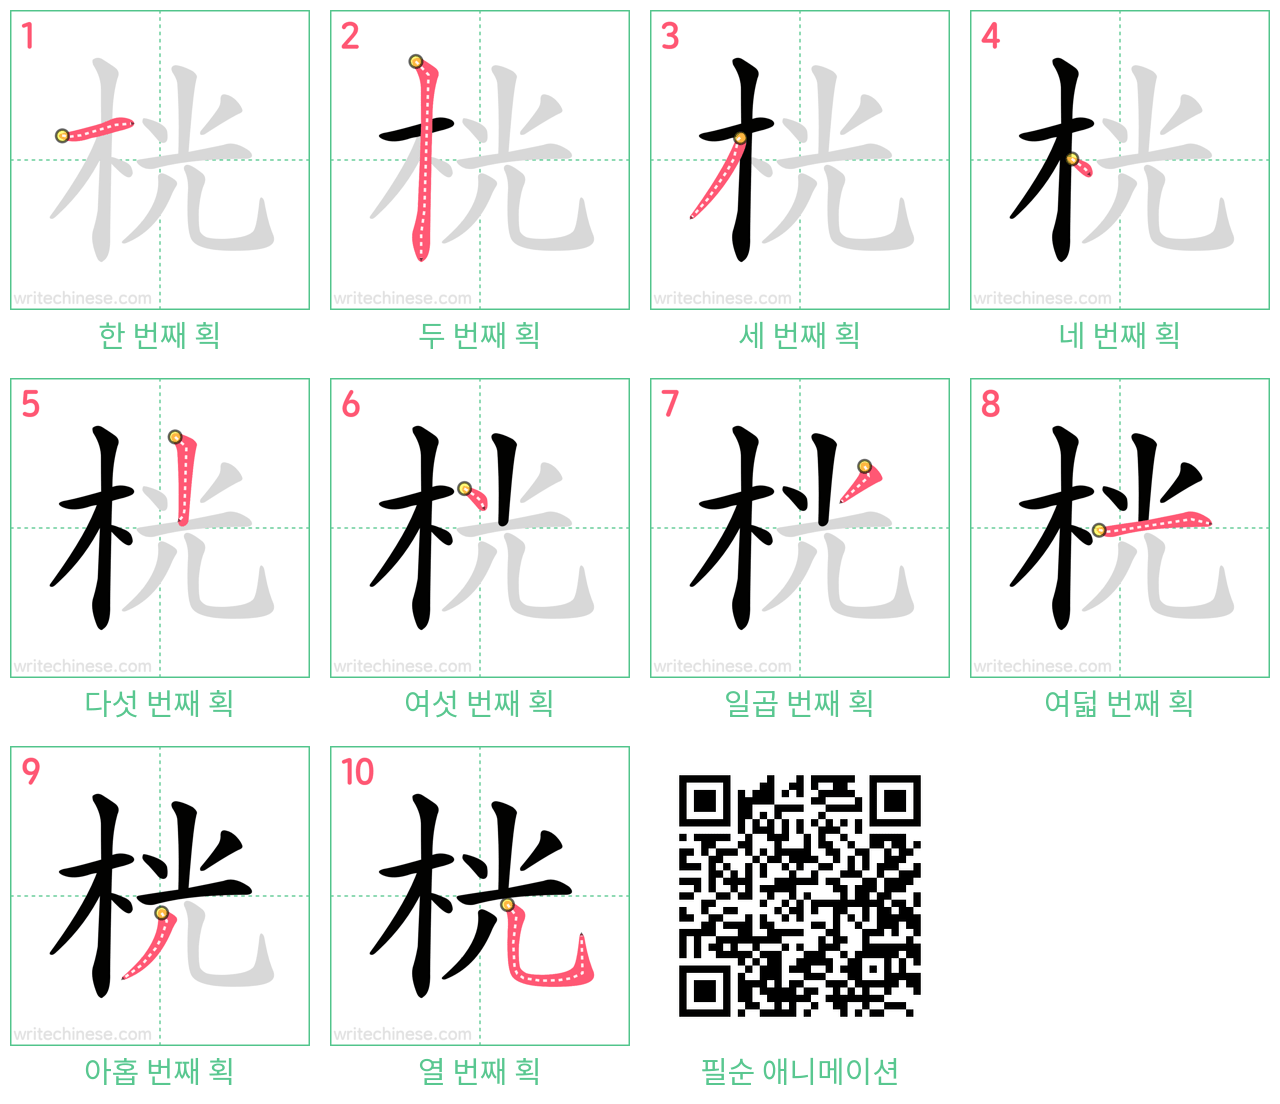 桄 step-by-step stroke order diagrams